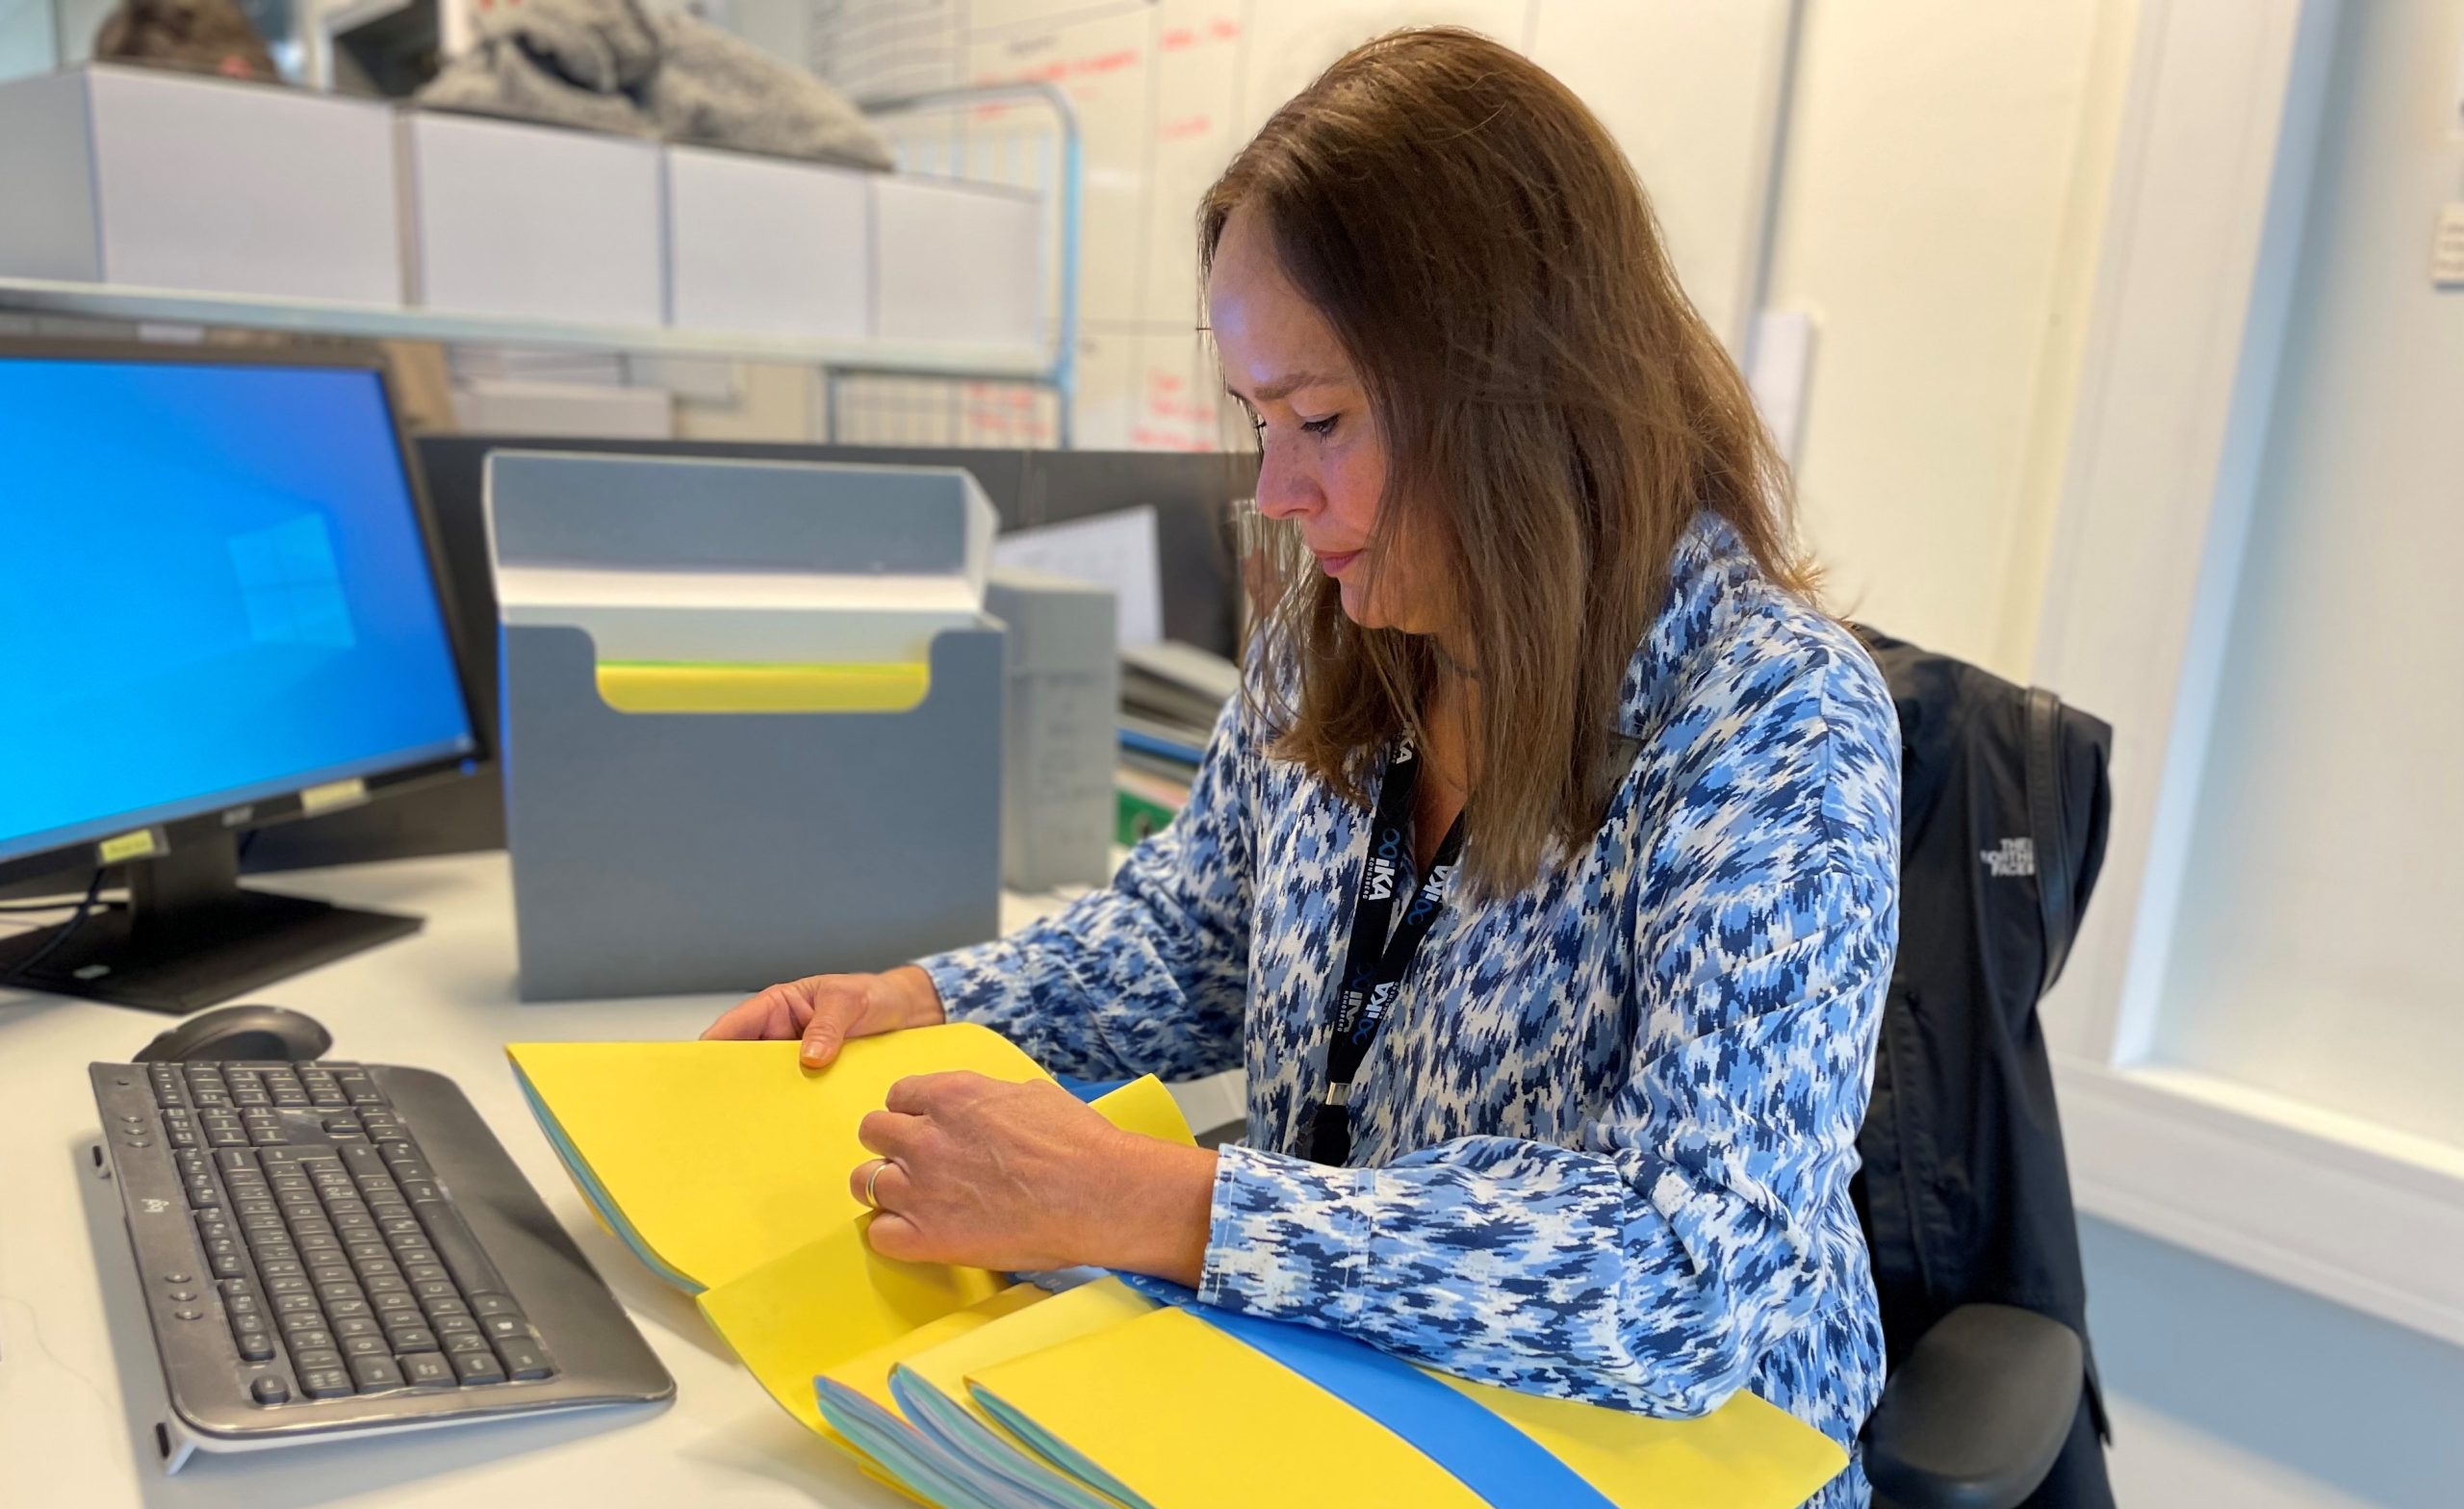 Kvinne med langt, brunt hår og blå og hvit kjole sitter ved en pult. Hun ser på pulten, og har gule mapper i hendene med et blått alfabetiseringsverktøy.